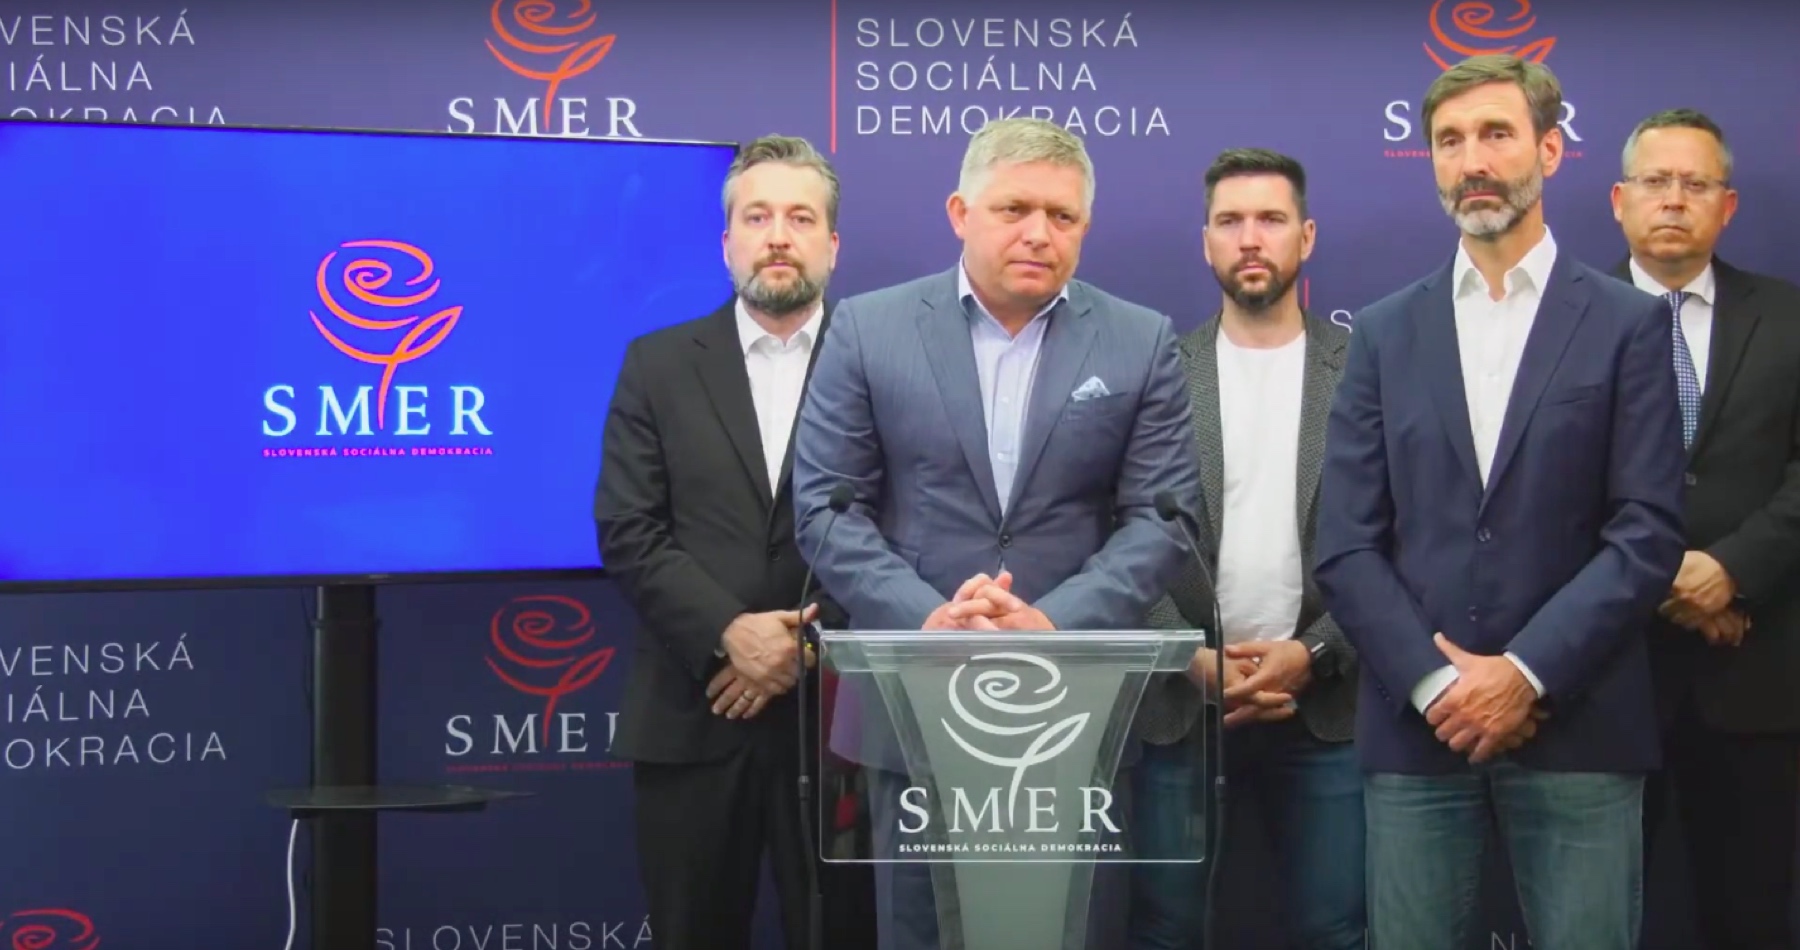 VIDEO: Politická situácia na Slovensku nadobúda neakceptovateľné rozmery. Soros junior si najprv prišiel oňuchať Čaputovej úradnícku vládu do Bratislavy a tá následne mimovládke jeho otca priklepla milióny eur. NATO a USA medzitým začína brutálne zasahovať do našej predvolebnej kampane. Fico varuje pred nevídaným a bezprecedentným ovplyvňovaním verejnosti za Sorosove peniaze